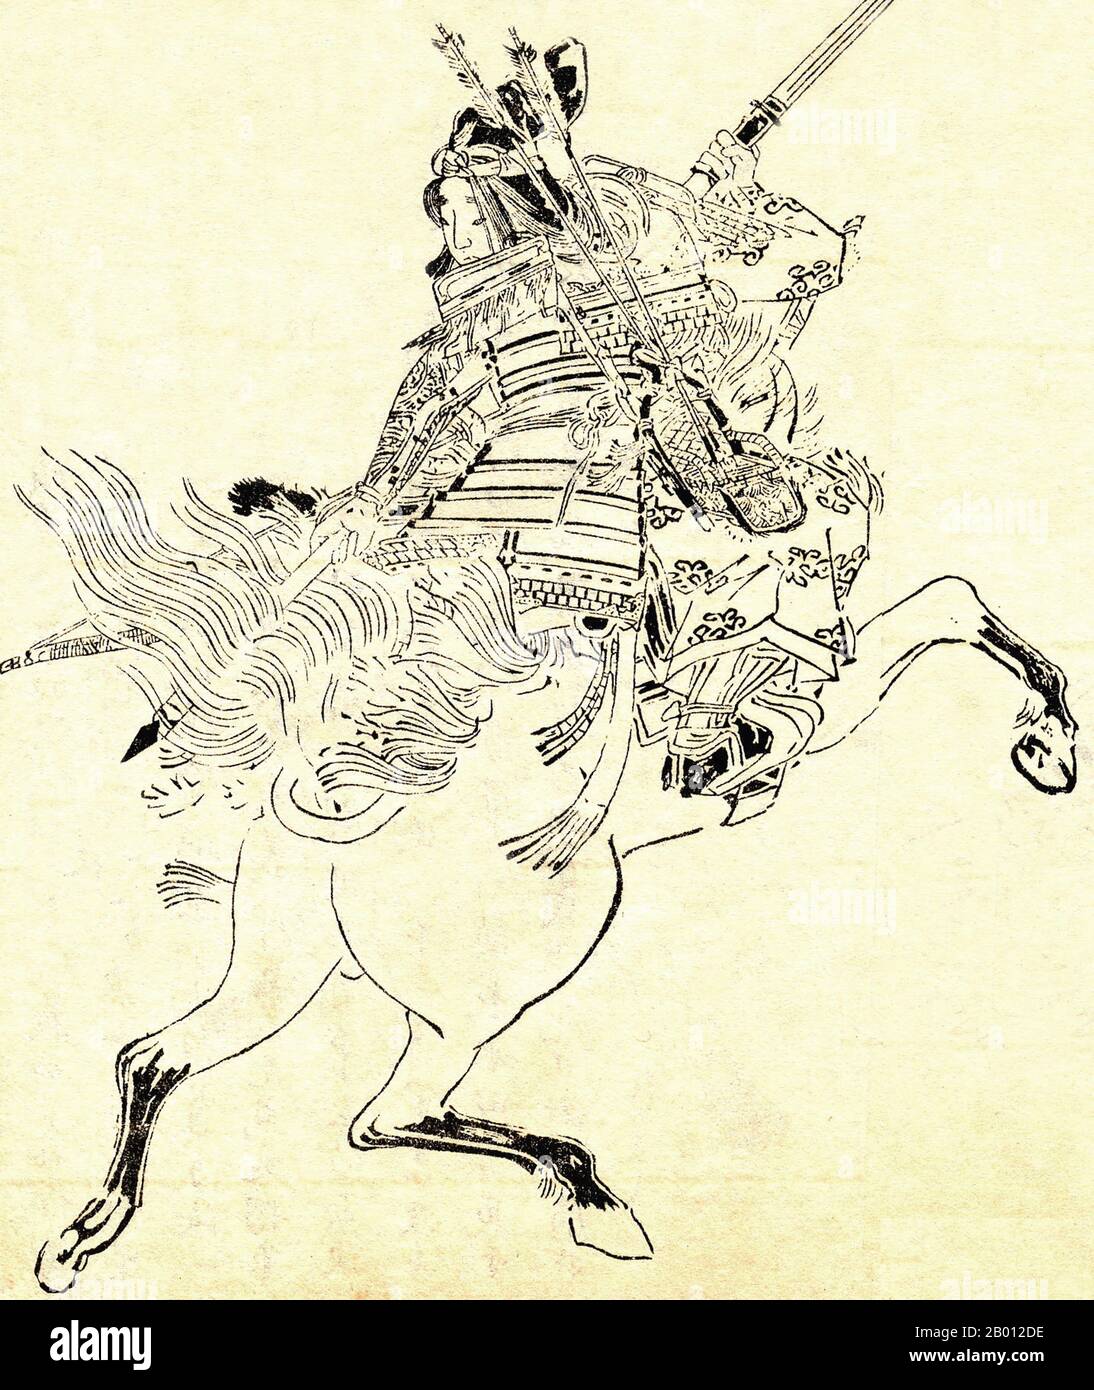 Japon: Tomoe Gozen (1157-1247), une femme samouraï ou onna-musha connue pour son courage et sa force. Dessin de Kikuchi Yosai (1781-1878), 19e siècle. Selon un compte-rendu historique: 'Tomoe était particulièrement beau, avec une peau blanche, de longs cheveux, et des caractéristiques de charme. Elle était également un Archer remarquablement fort, et comme un swordswoman elle était un guerrier valant mille, prêt à affronter un démon ou un dieu, monté ou à pied. Elle a manipulé des chevaux sans rupture avec une compétence superbe ; elle a roulé sans délire des descentes périlleuses. Chaque fois qu'une bataille était imminente, Yoshinaka l'a envoyée comme son premier capitaine...' Banque D'Images